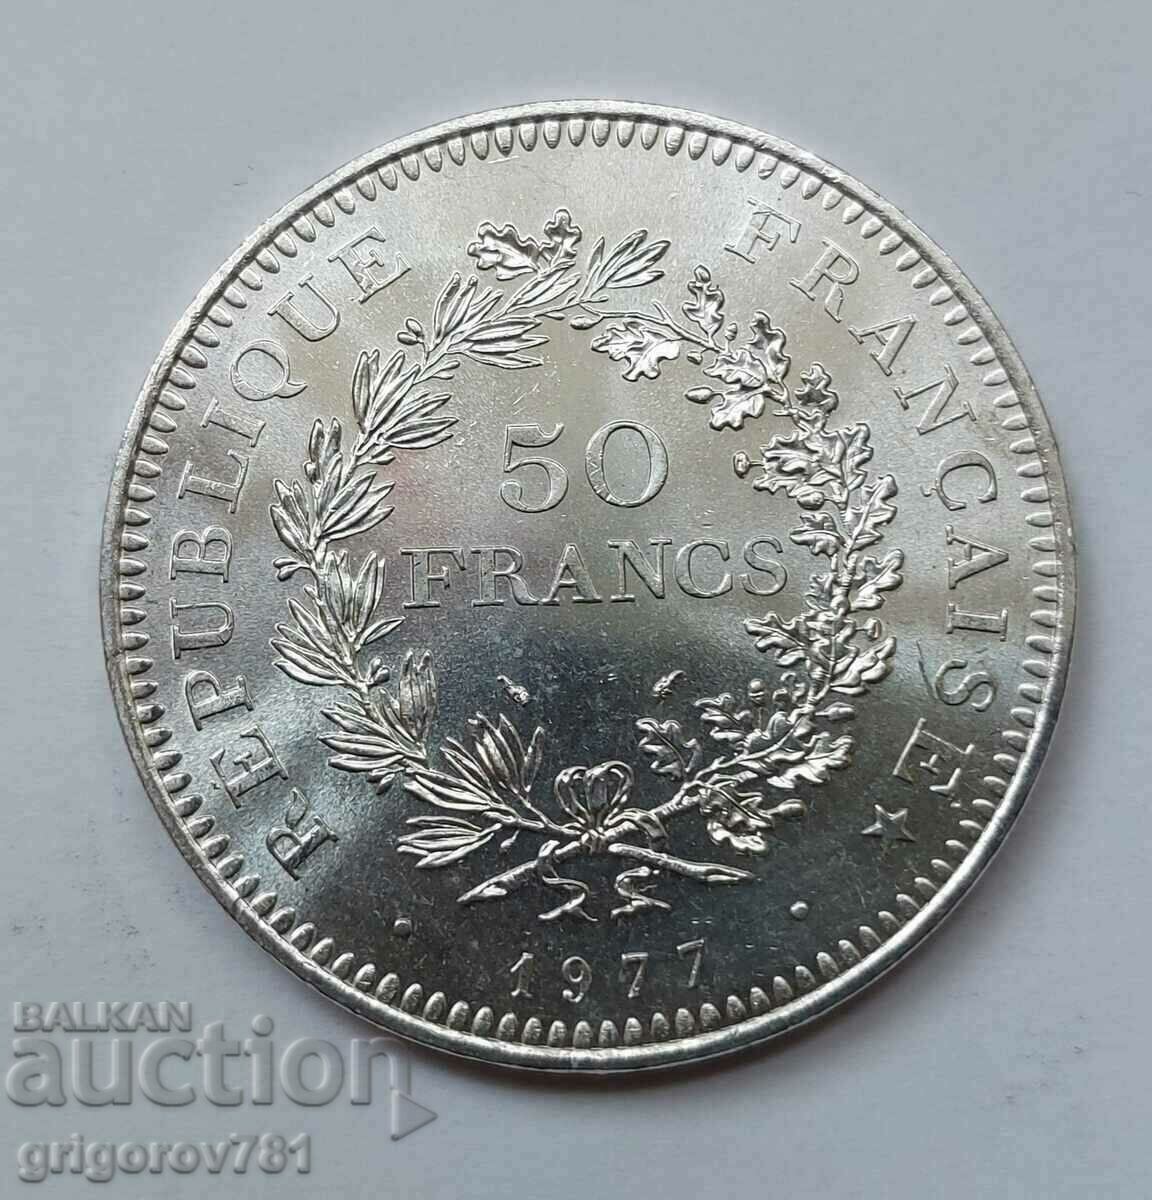 50 Φράγκα Ασημένιο Γαλλία 1977 - Ασημένιο νόμισμα #2